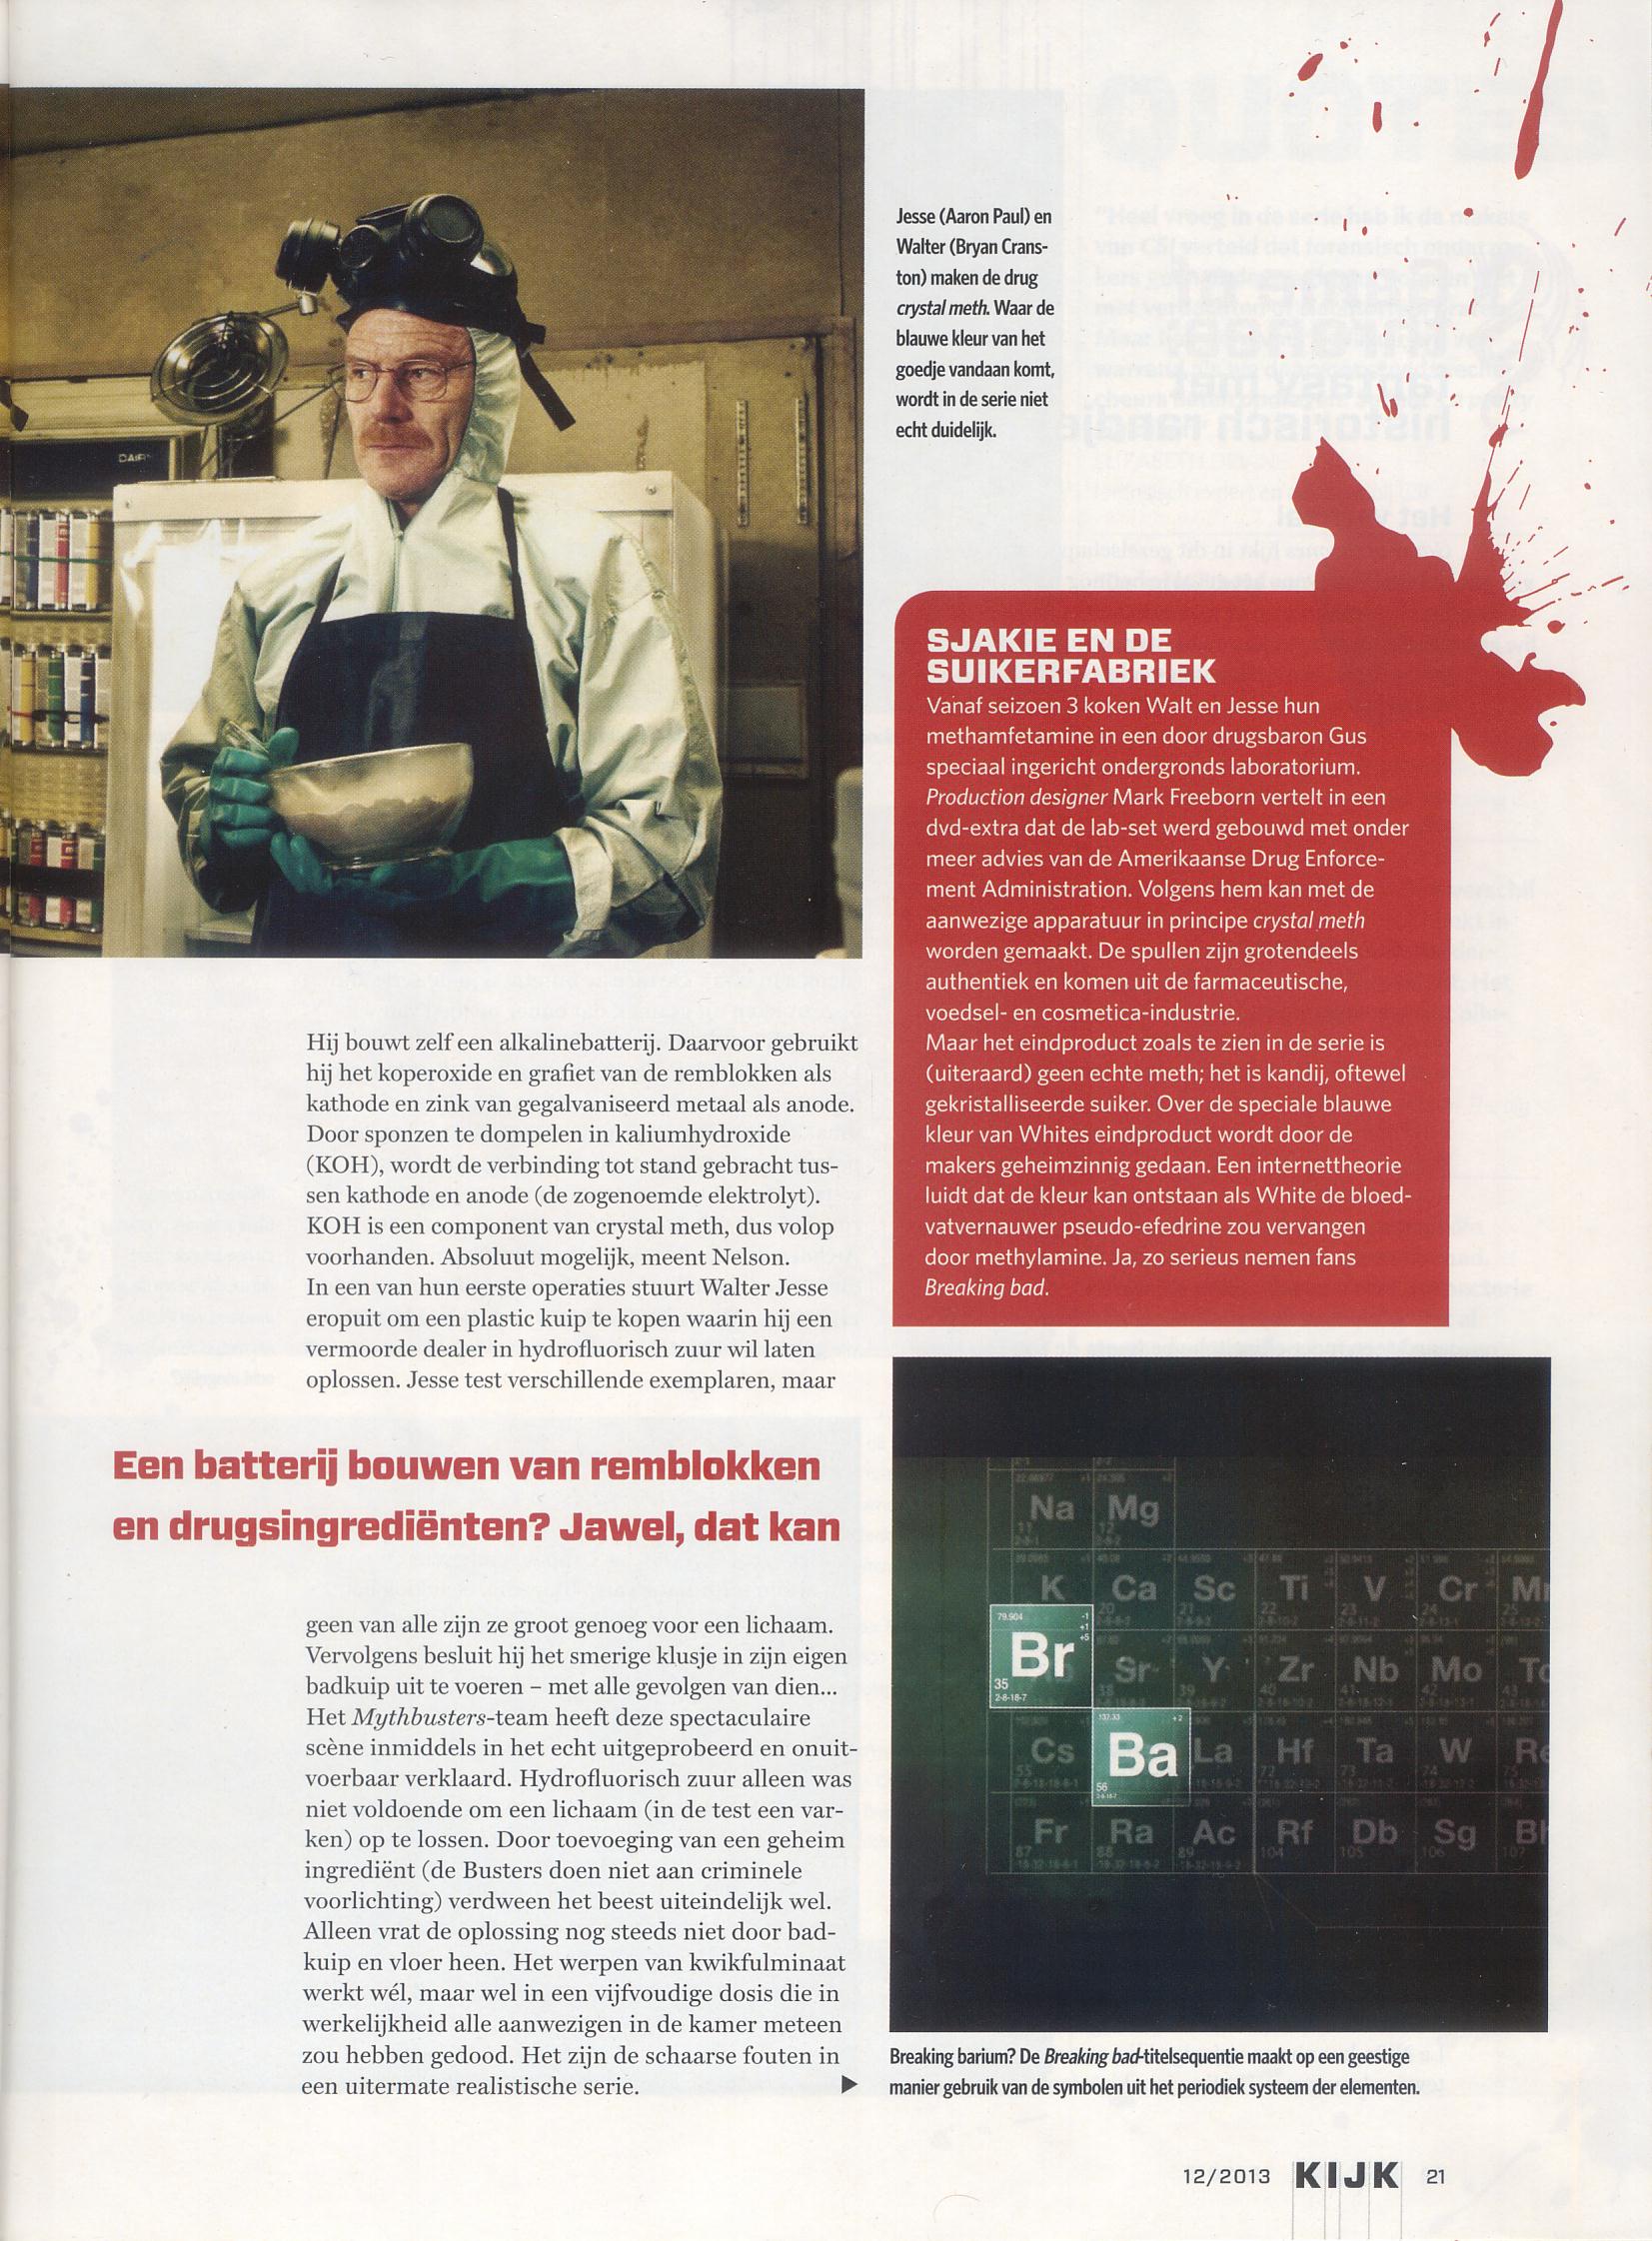 Dutch KIJK magazine, December 2013